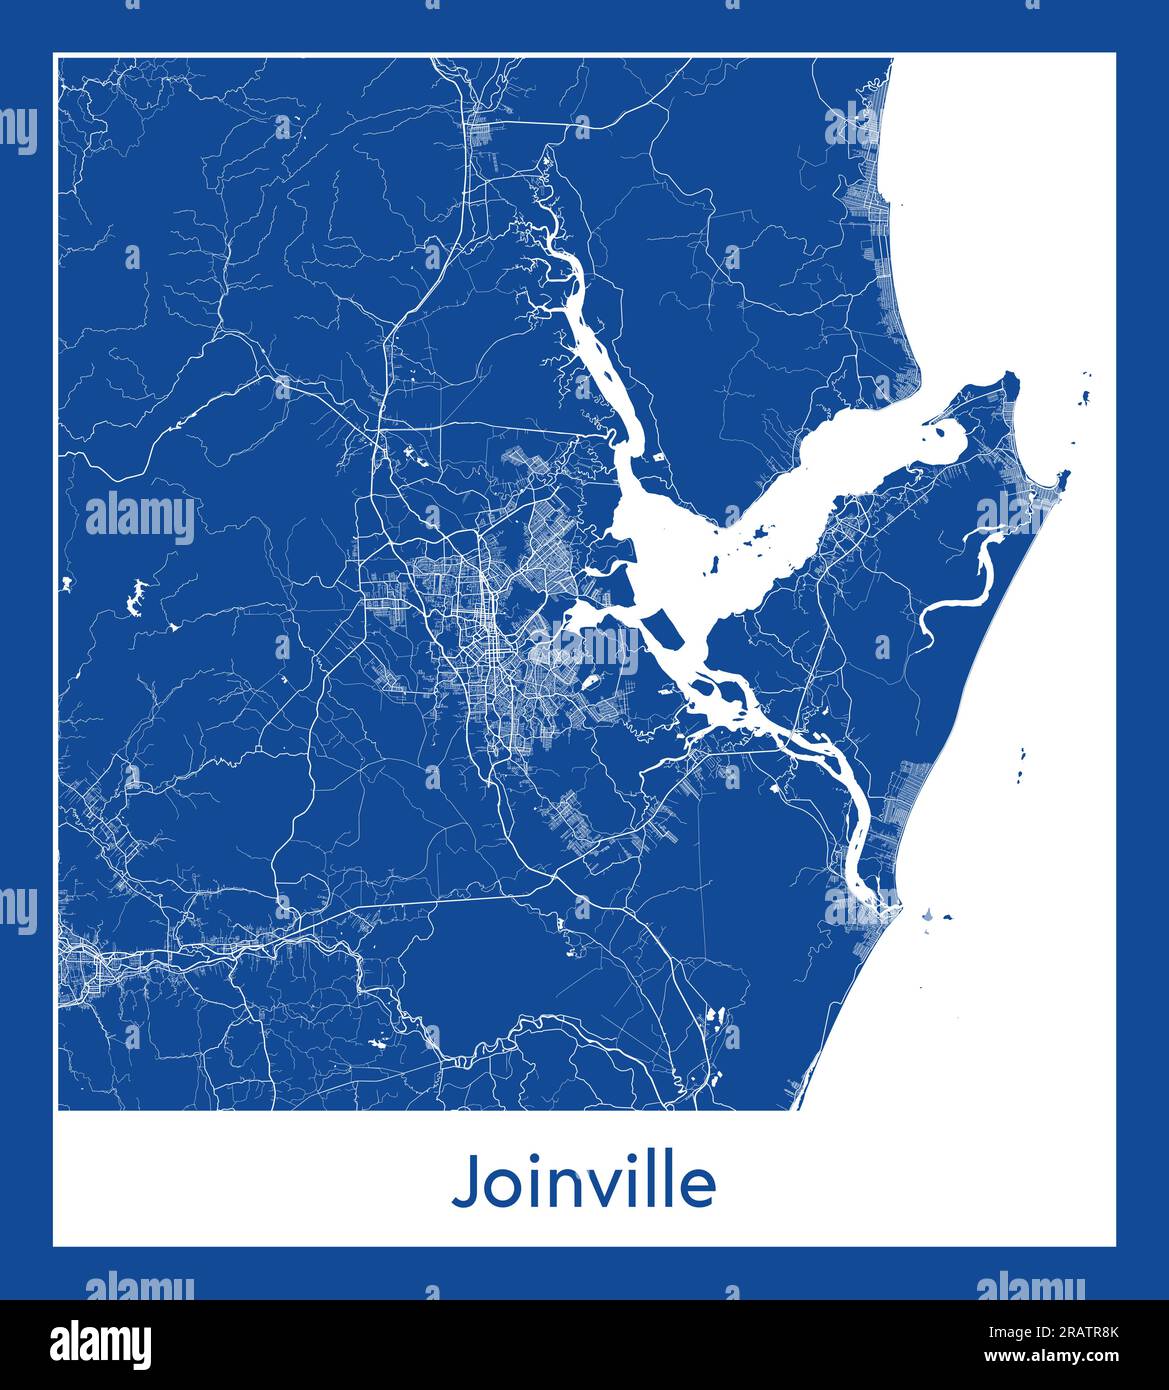 Joinville Brésil Amérique du Sud carte de la ville illustration vectorielle d'impression bleue Illustration de Vecteur